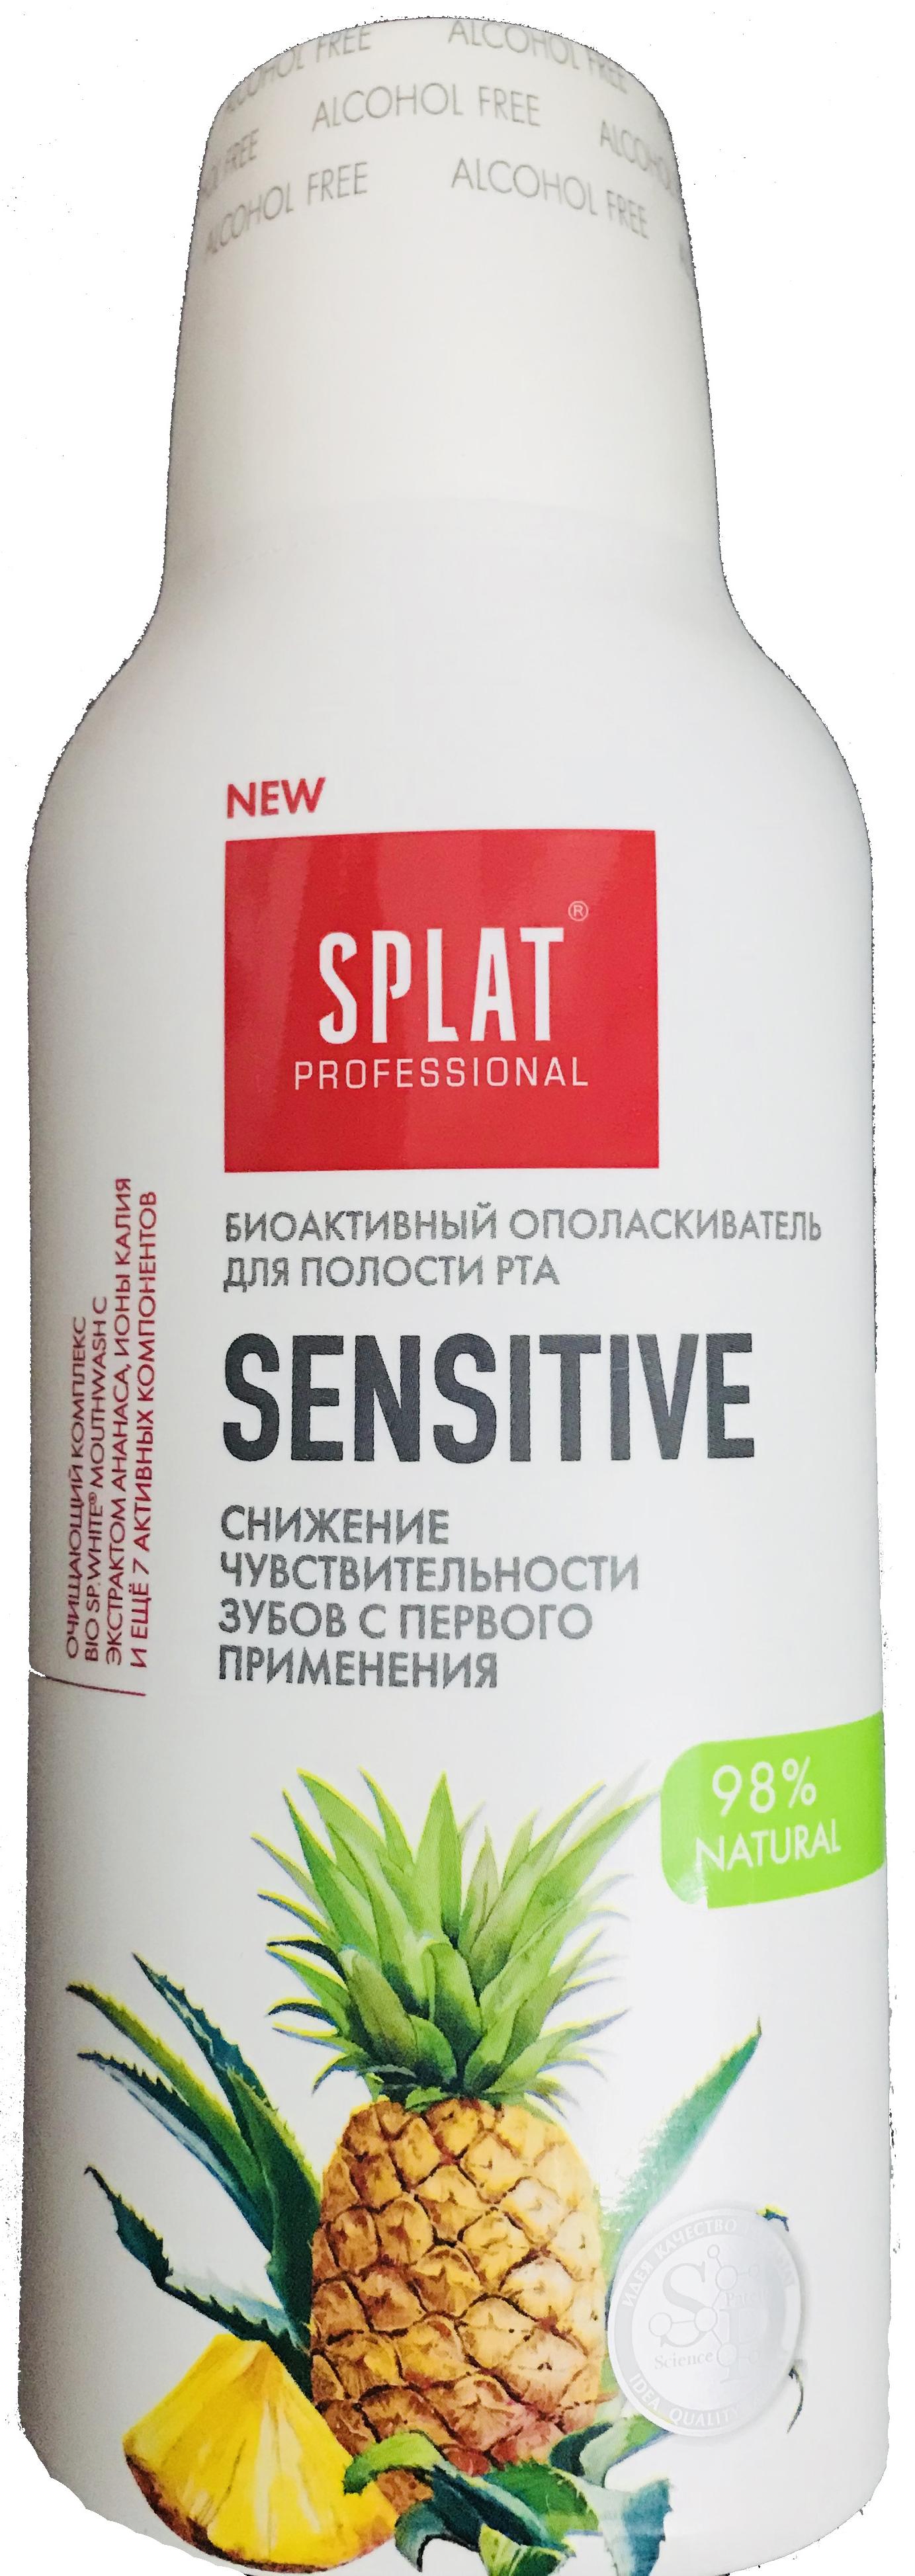 SPLAT Professional Sensitive Биоактивный ополаскиватель для полости рта Снижение чувствительности зубов с первого применения 275 мл